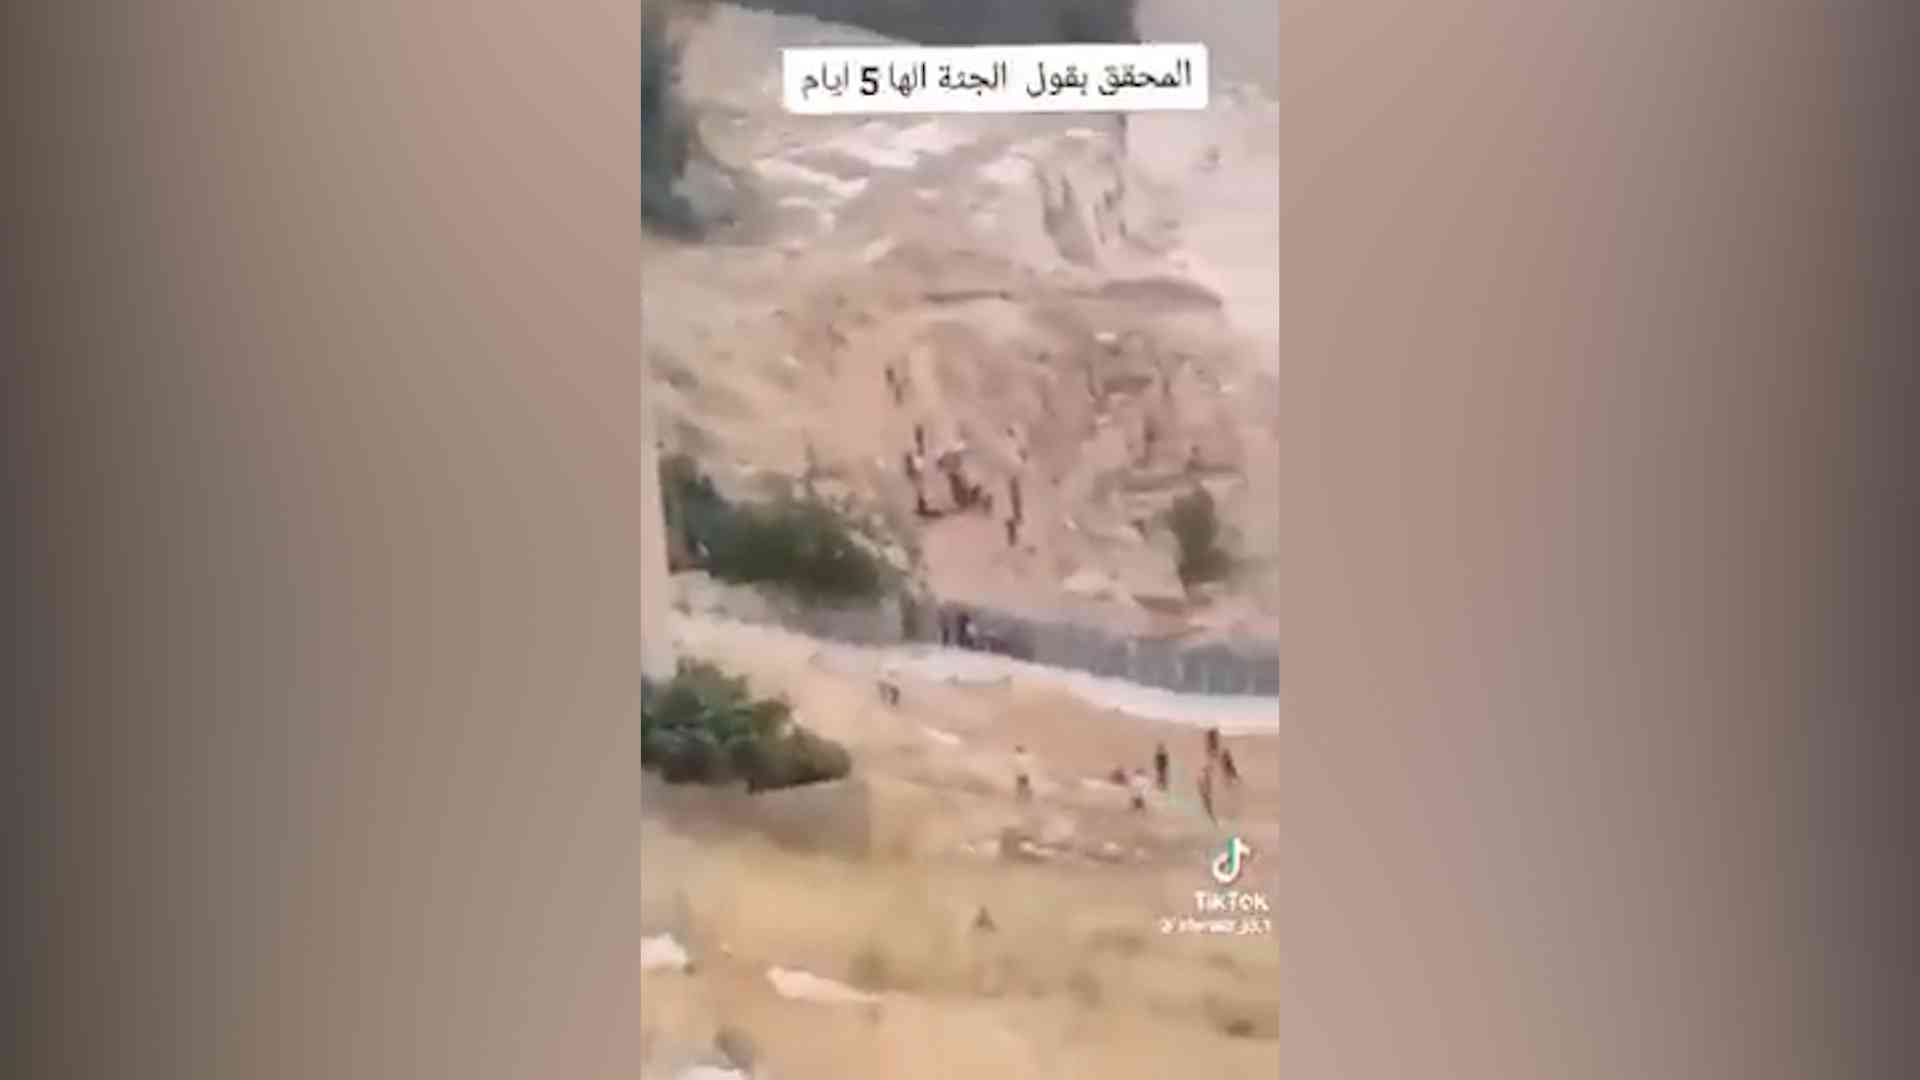 العثور على جثة بمنطقة حرجية في عمان – فيديو